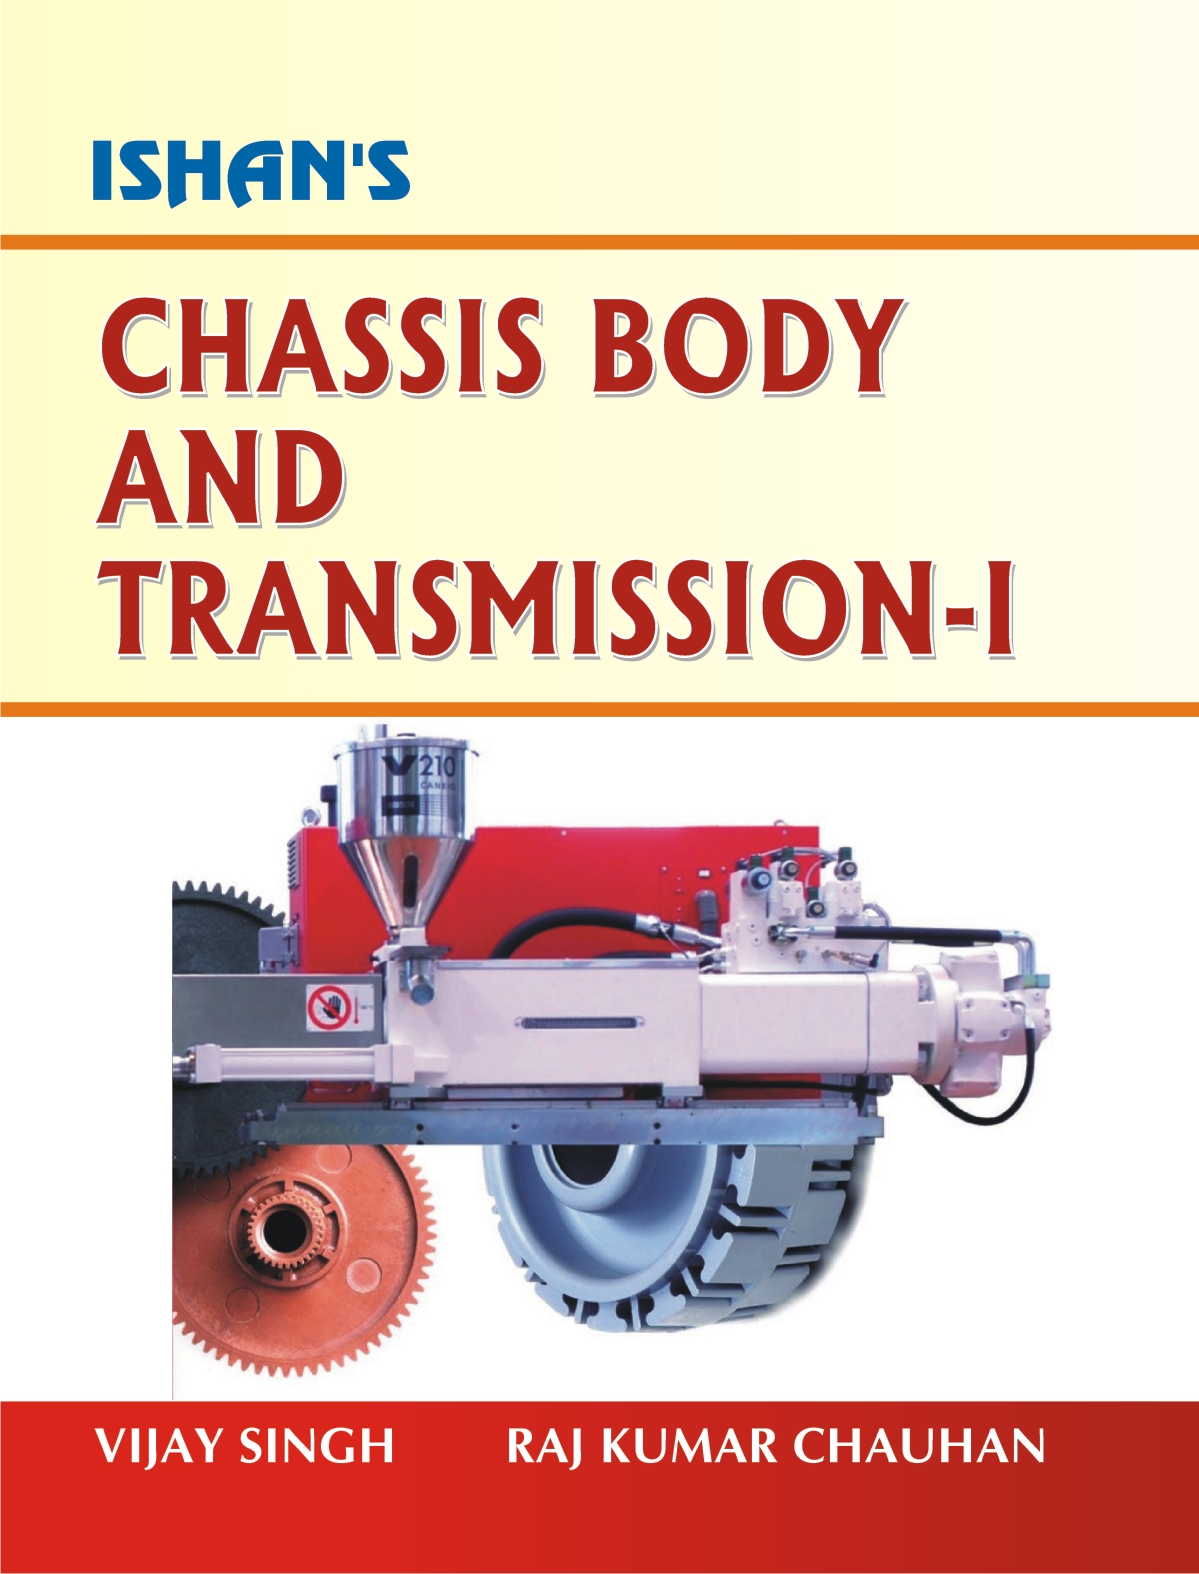 Chessis Body & Transmission - I